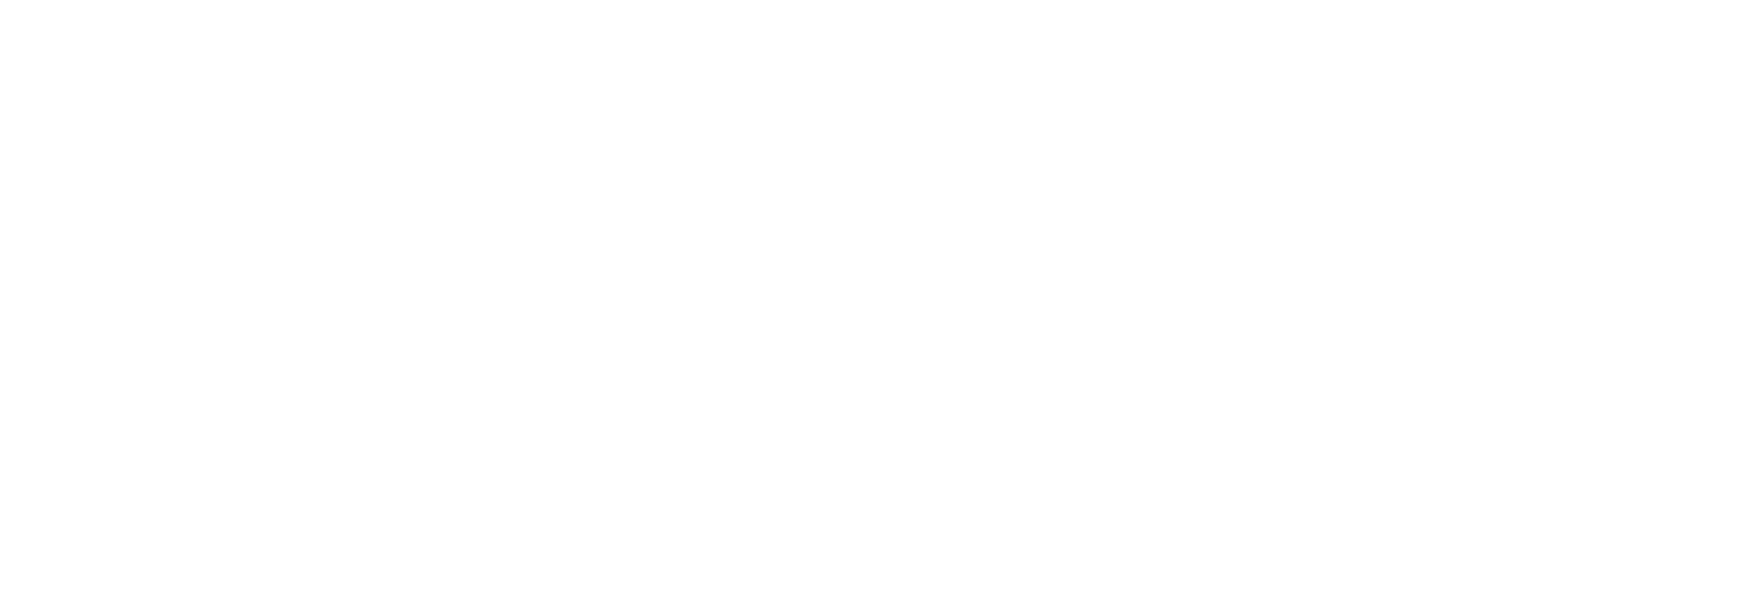 Lesekloden hvit logo